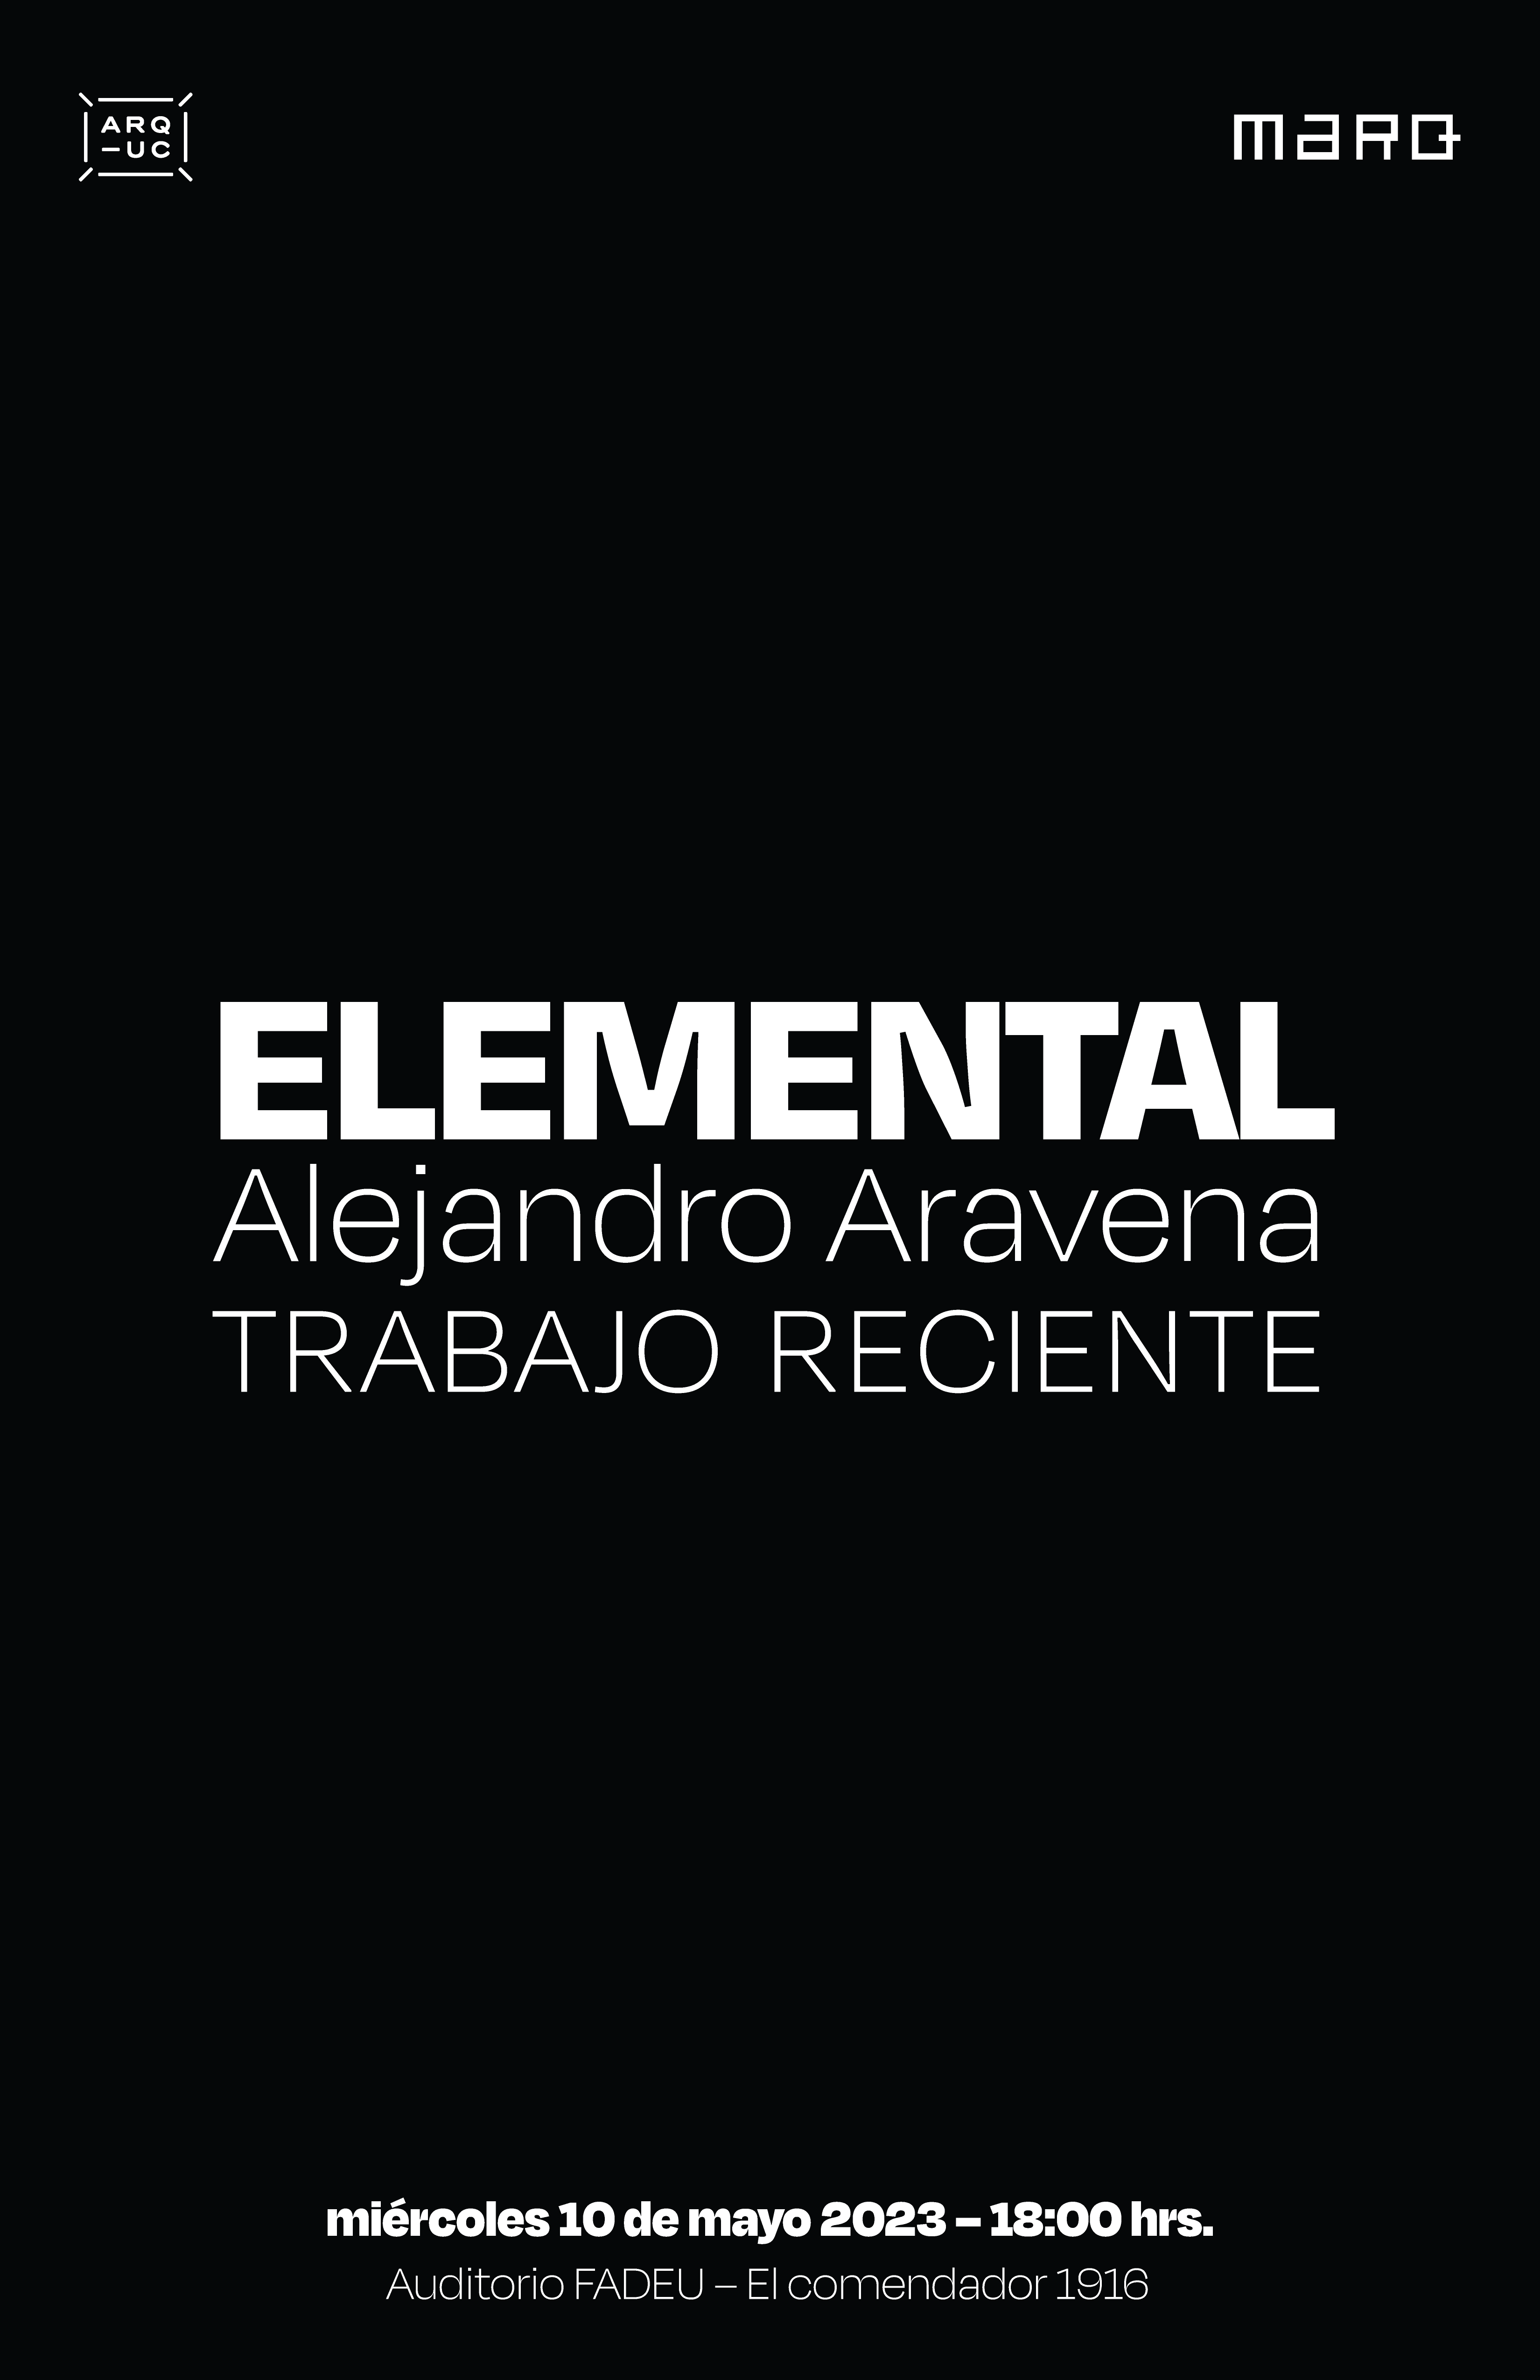 05.23Alejandro_Aravena_ELEMENTAL_v2-05.png